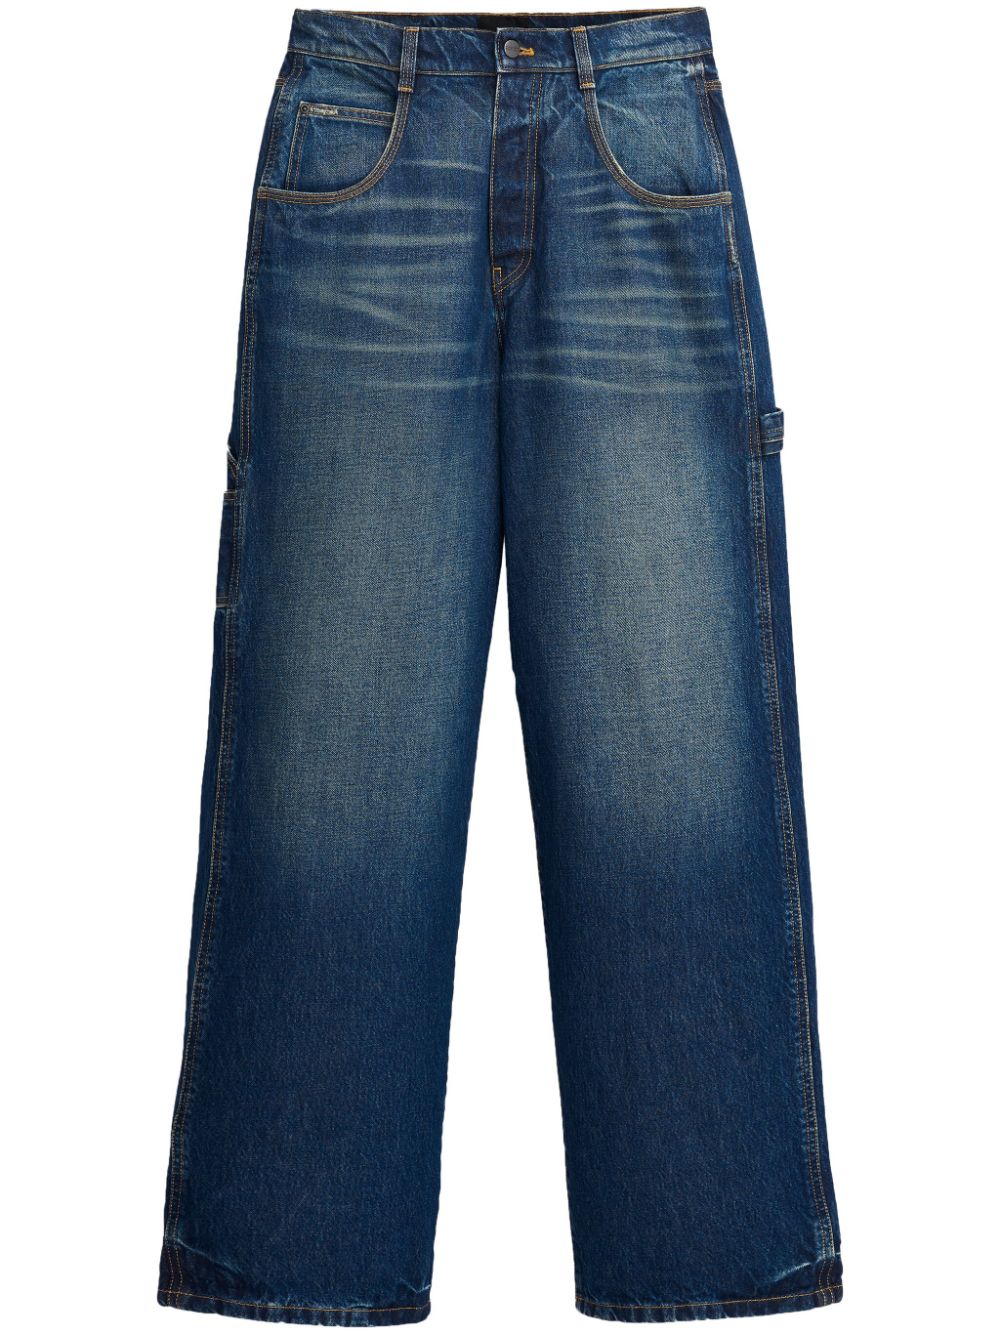 Oversized wide-leg jeans